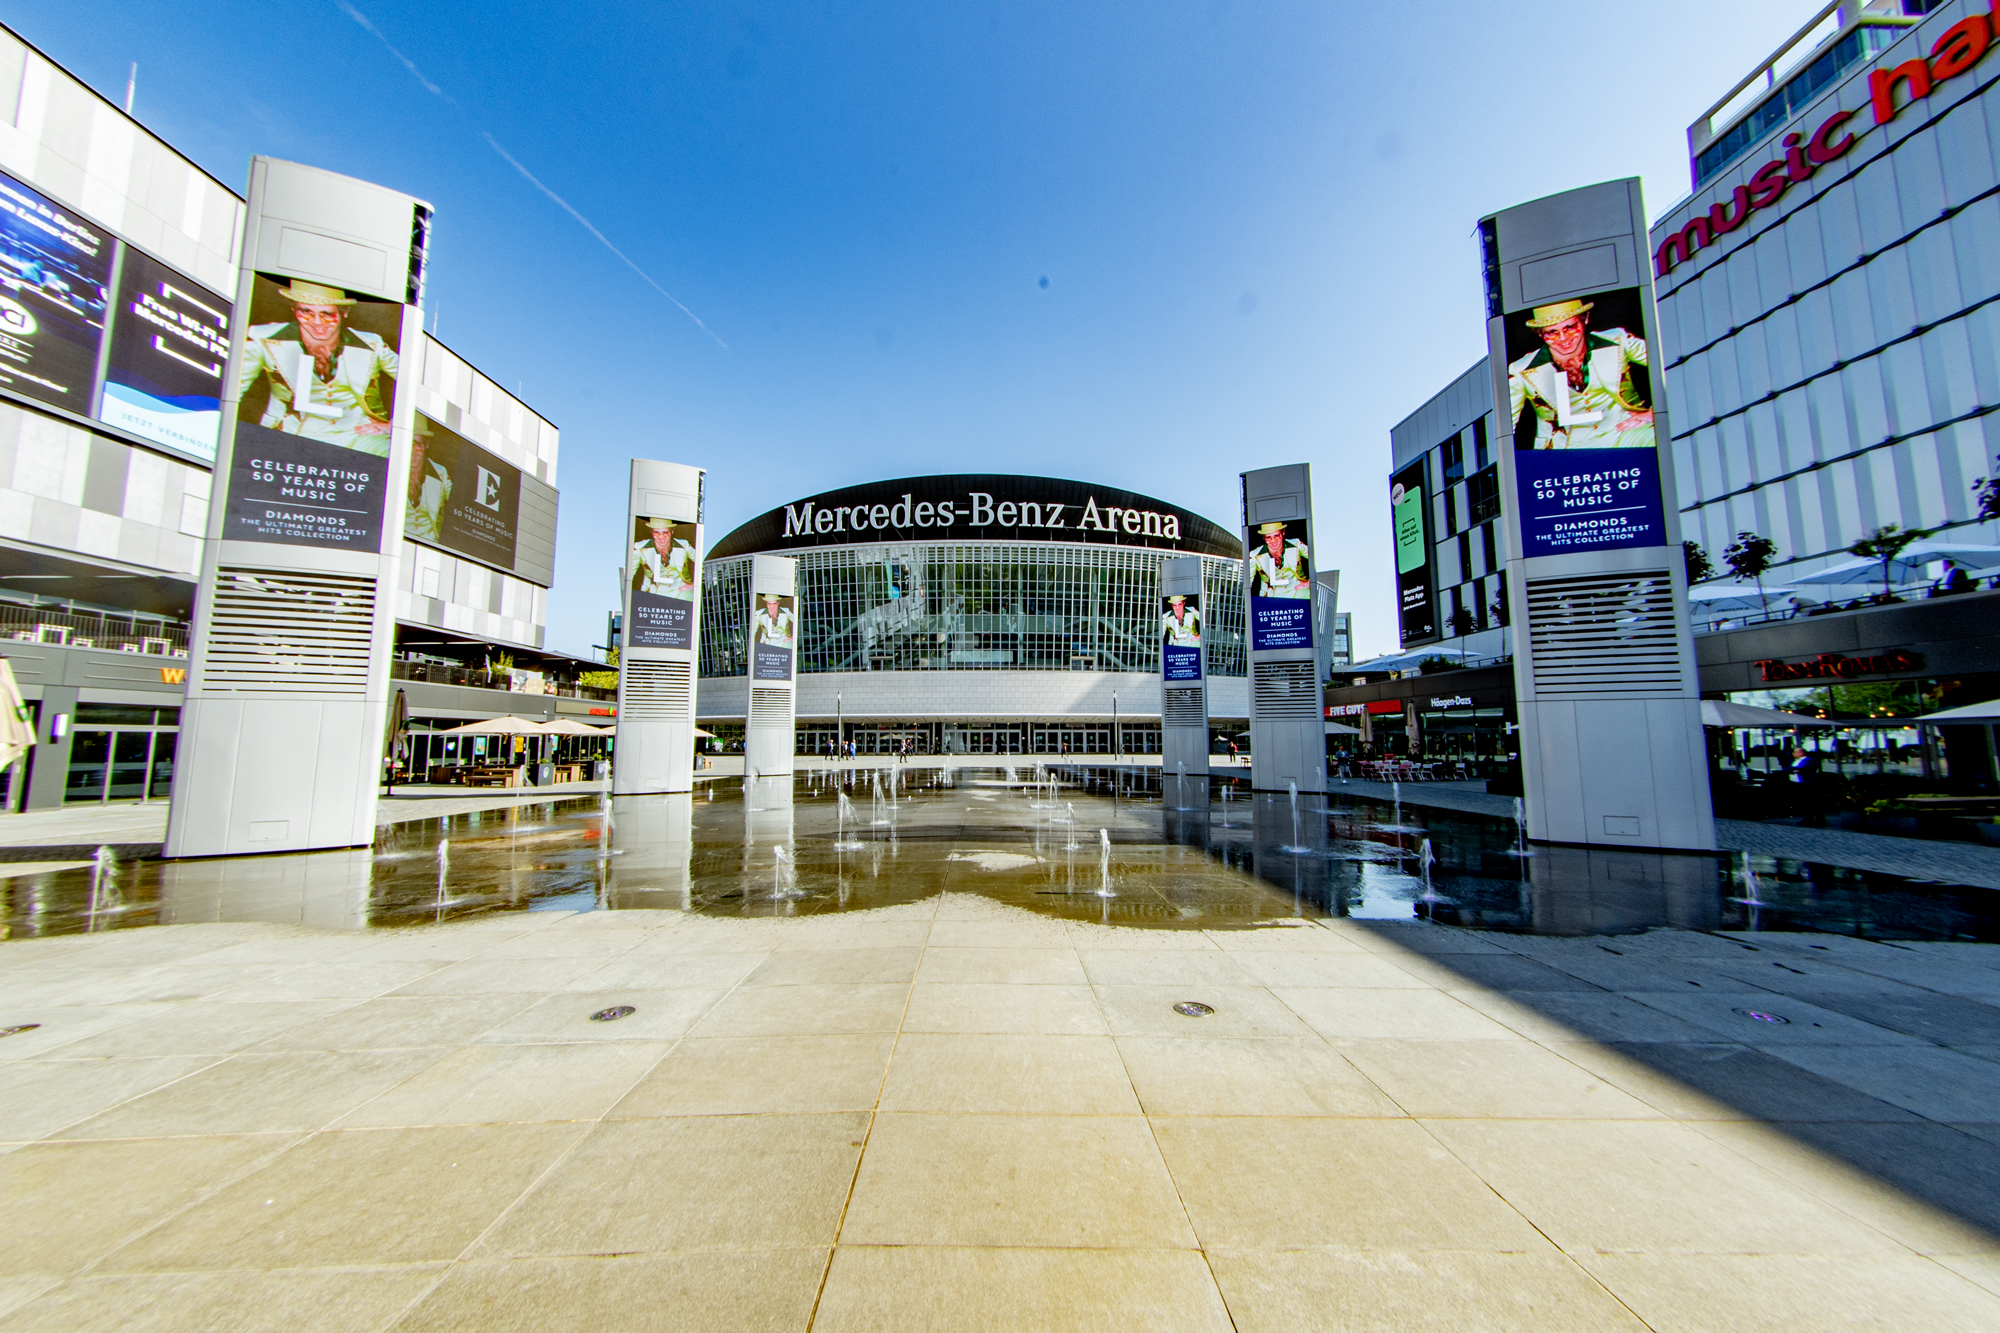 Mittig auf dem Platz vor der Mercedes-Benz-Arena stehend mit zentralem Blick auf die Glasfassade der Halle. Rechts und links stehen riesige Bildschirme mit wechselnder Werbung.